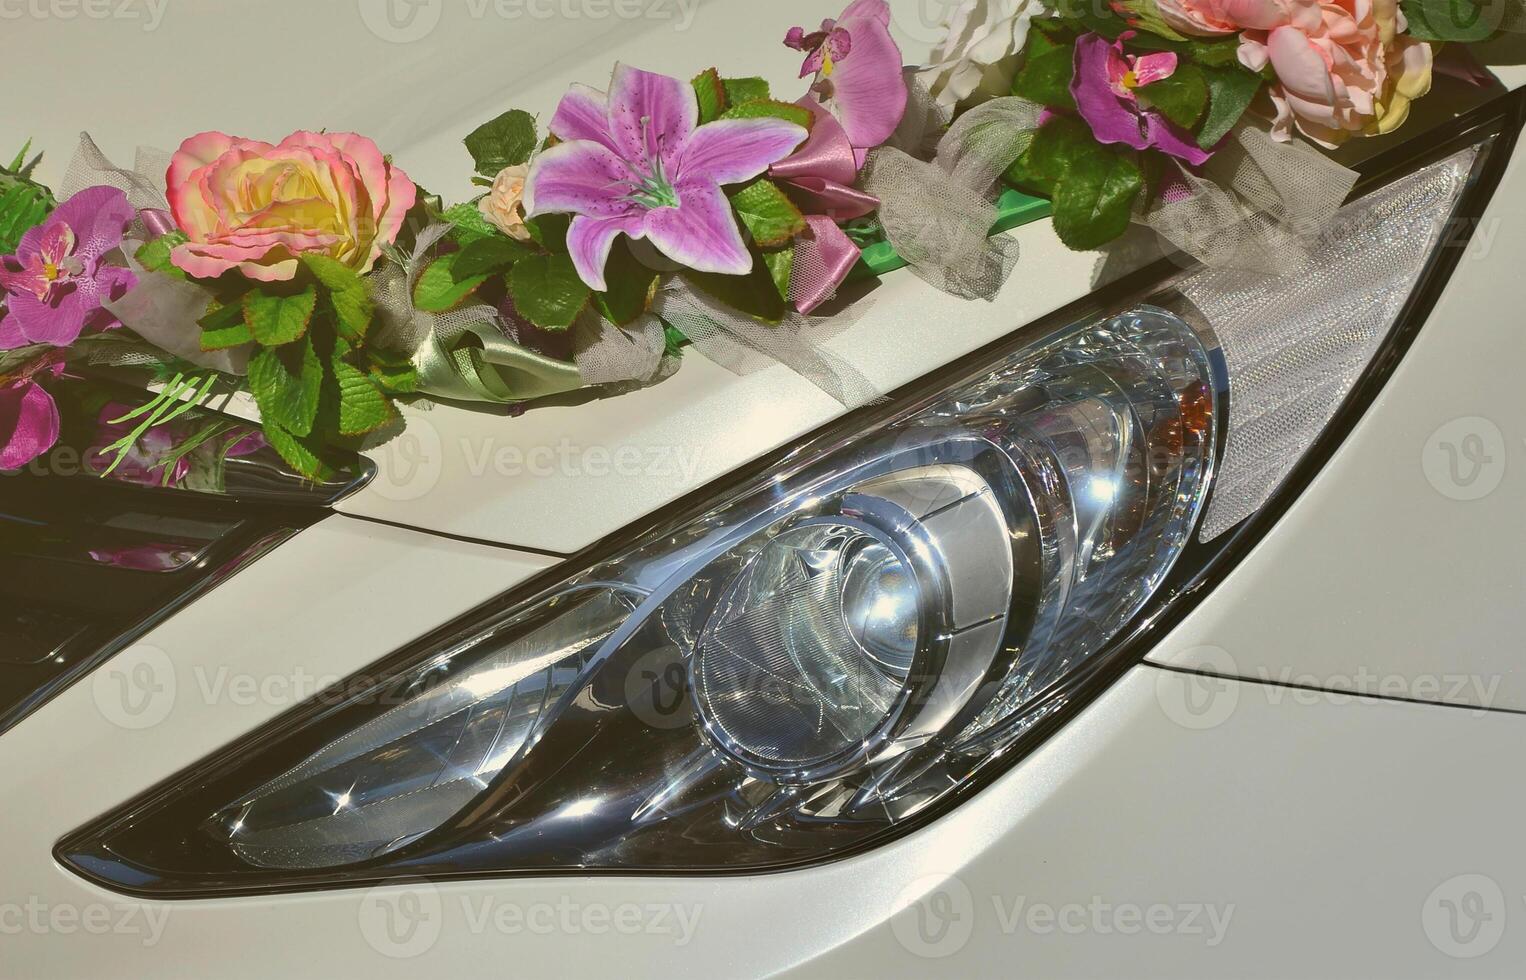 ein detailreiches Foto der Motorhaube des Hochzeitsautos, geschmückt mit vielen verschiedenen Blumen. Das Auto wird für eine Hochzeitszeremonie vorbereitet